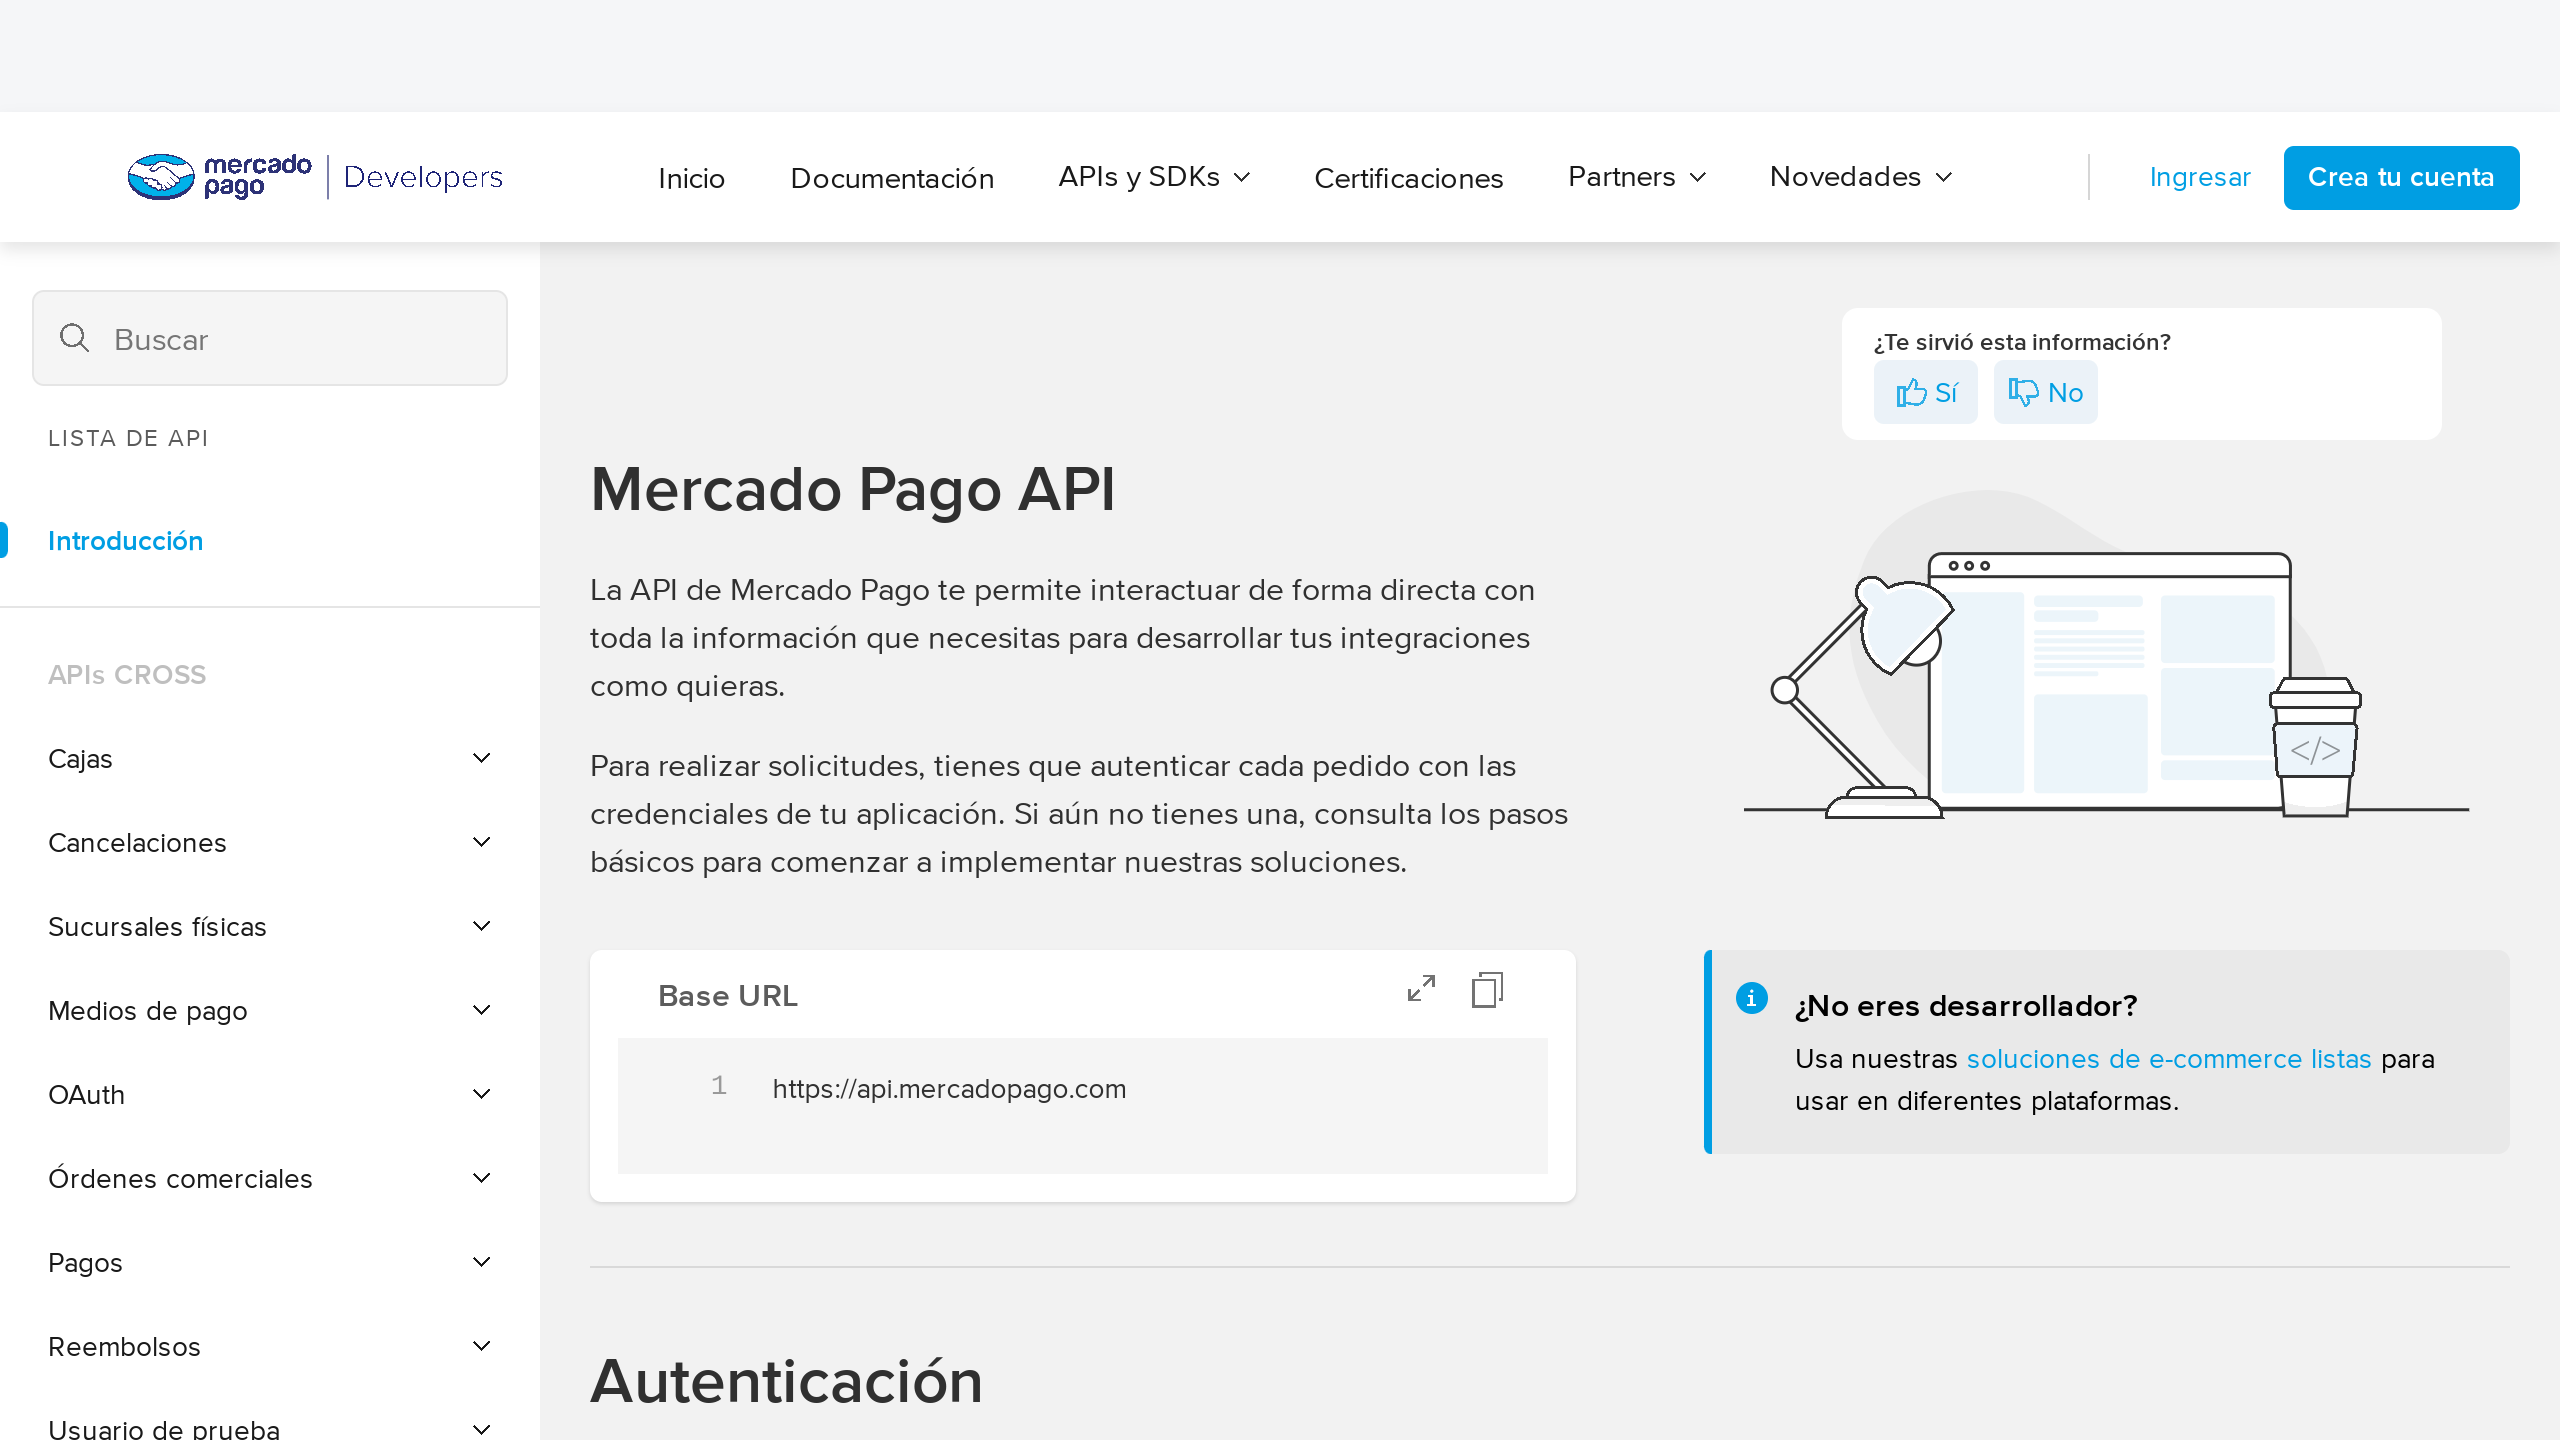 MercadoPago's website screenshot